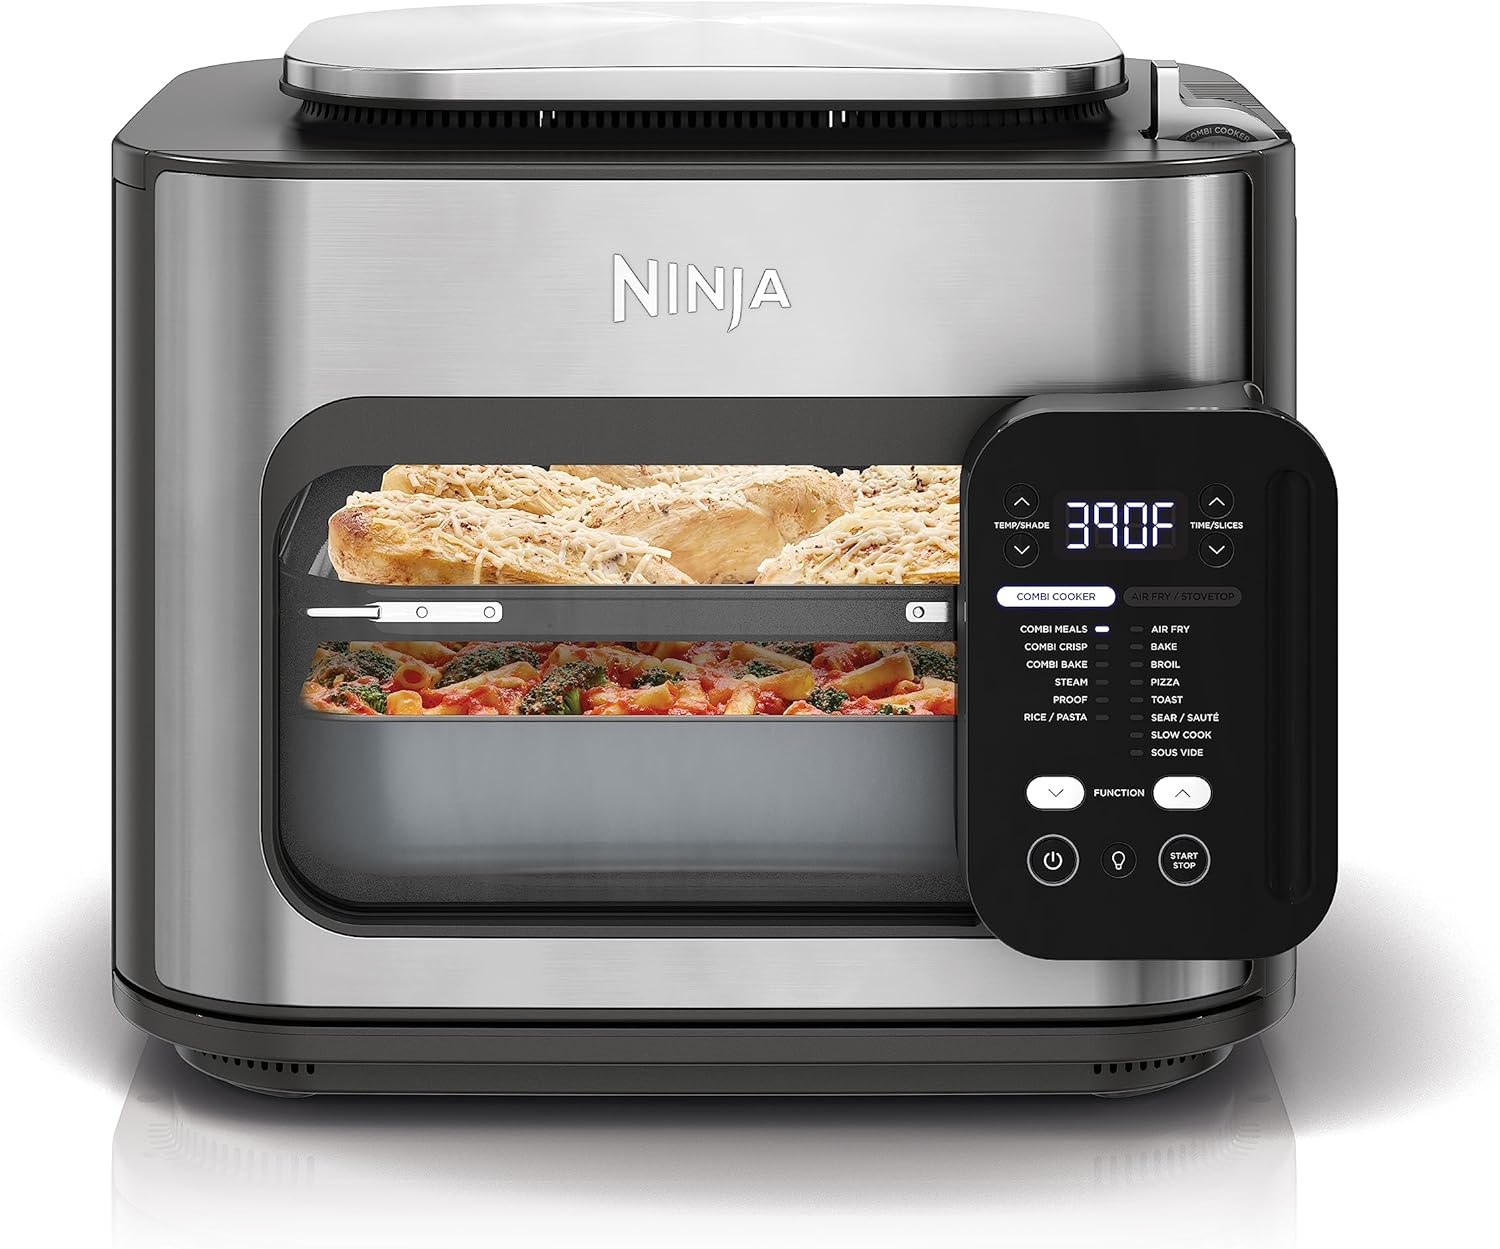 Ninja 14-in-1 Multicooker, Oven & Air Fryer, 15-Min Meals, 3 Accessories, Grey - Certified Refurbished